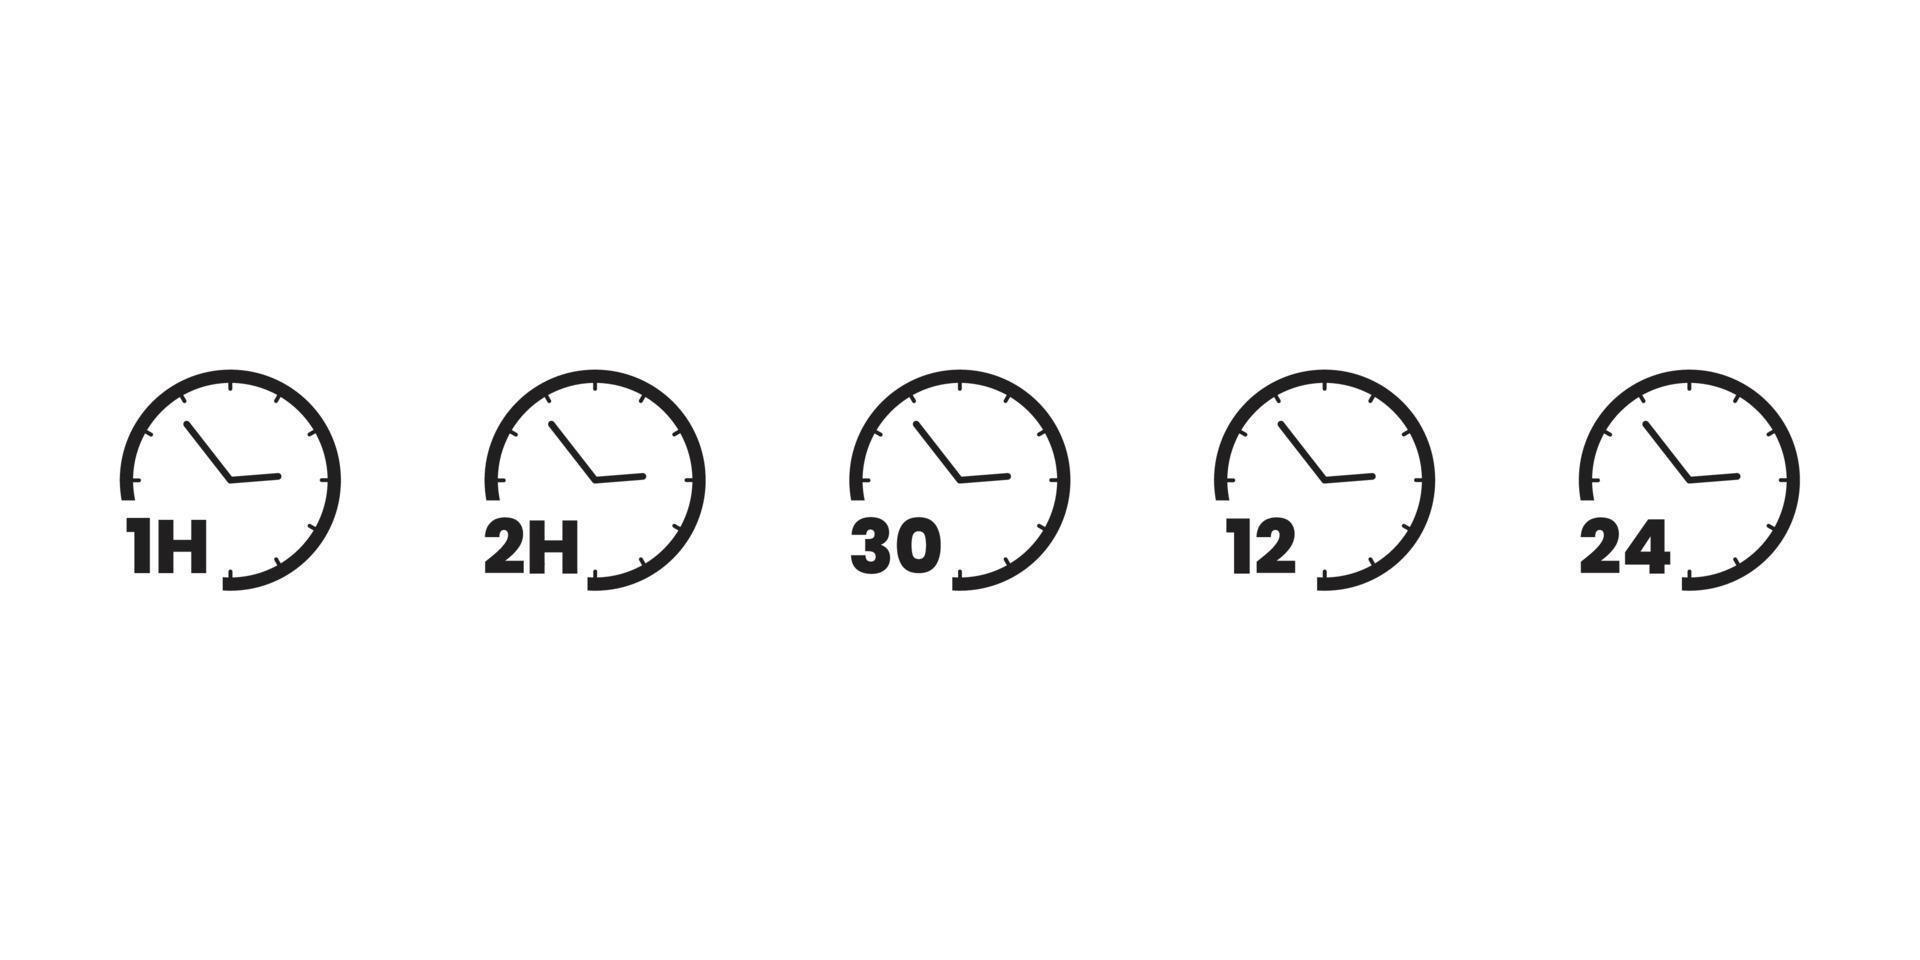 linha do vetor do ícone do cronômetro do relógio de tempo na imagem de fundo branco para web, apresentação, logotipo, símbolo do ícone.